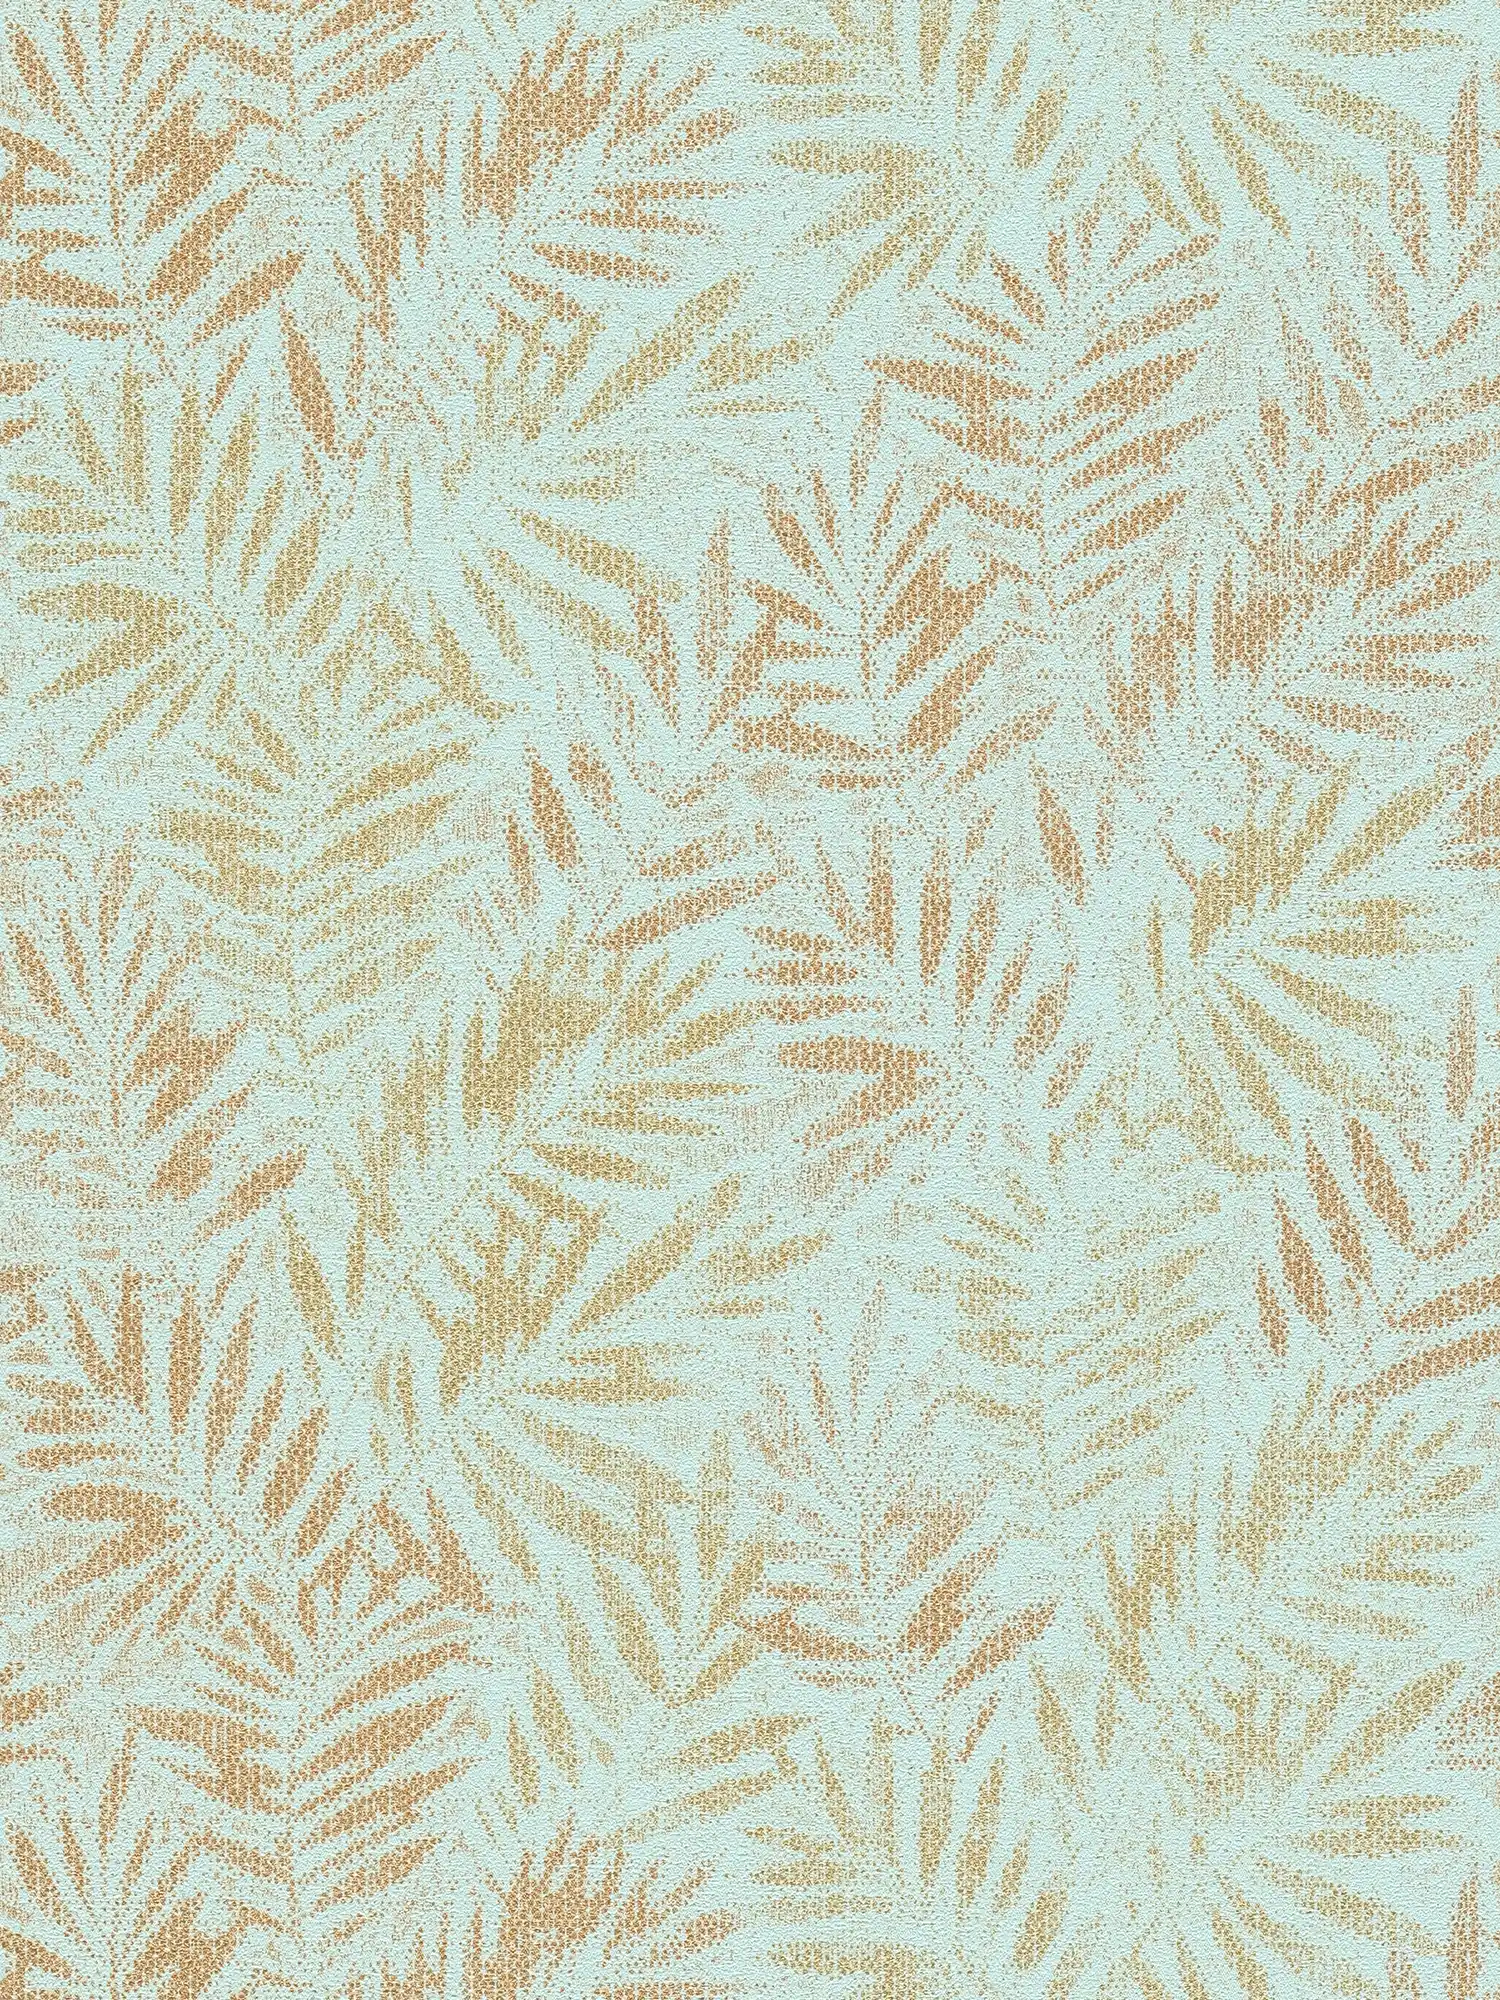 Arazzo in tessuto non tessuto con motivo a foglie ed effetto lucido - Turchese, oro
